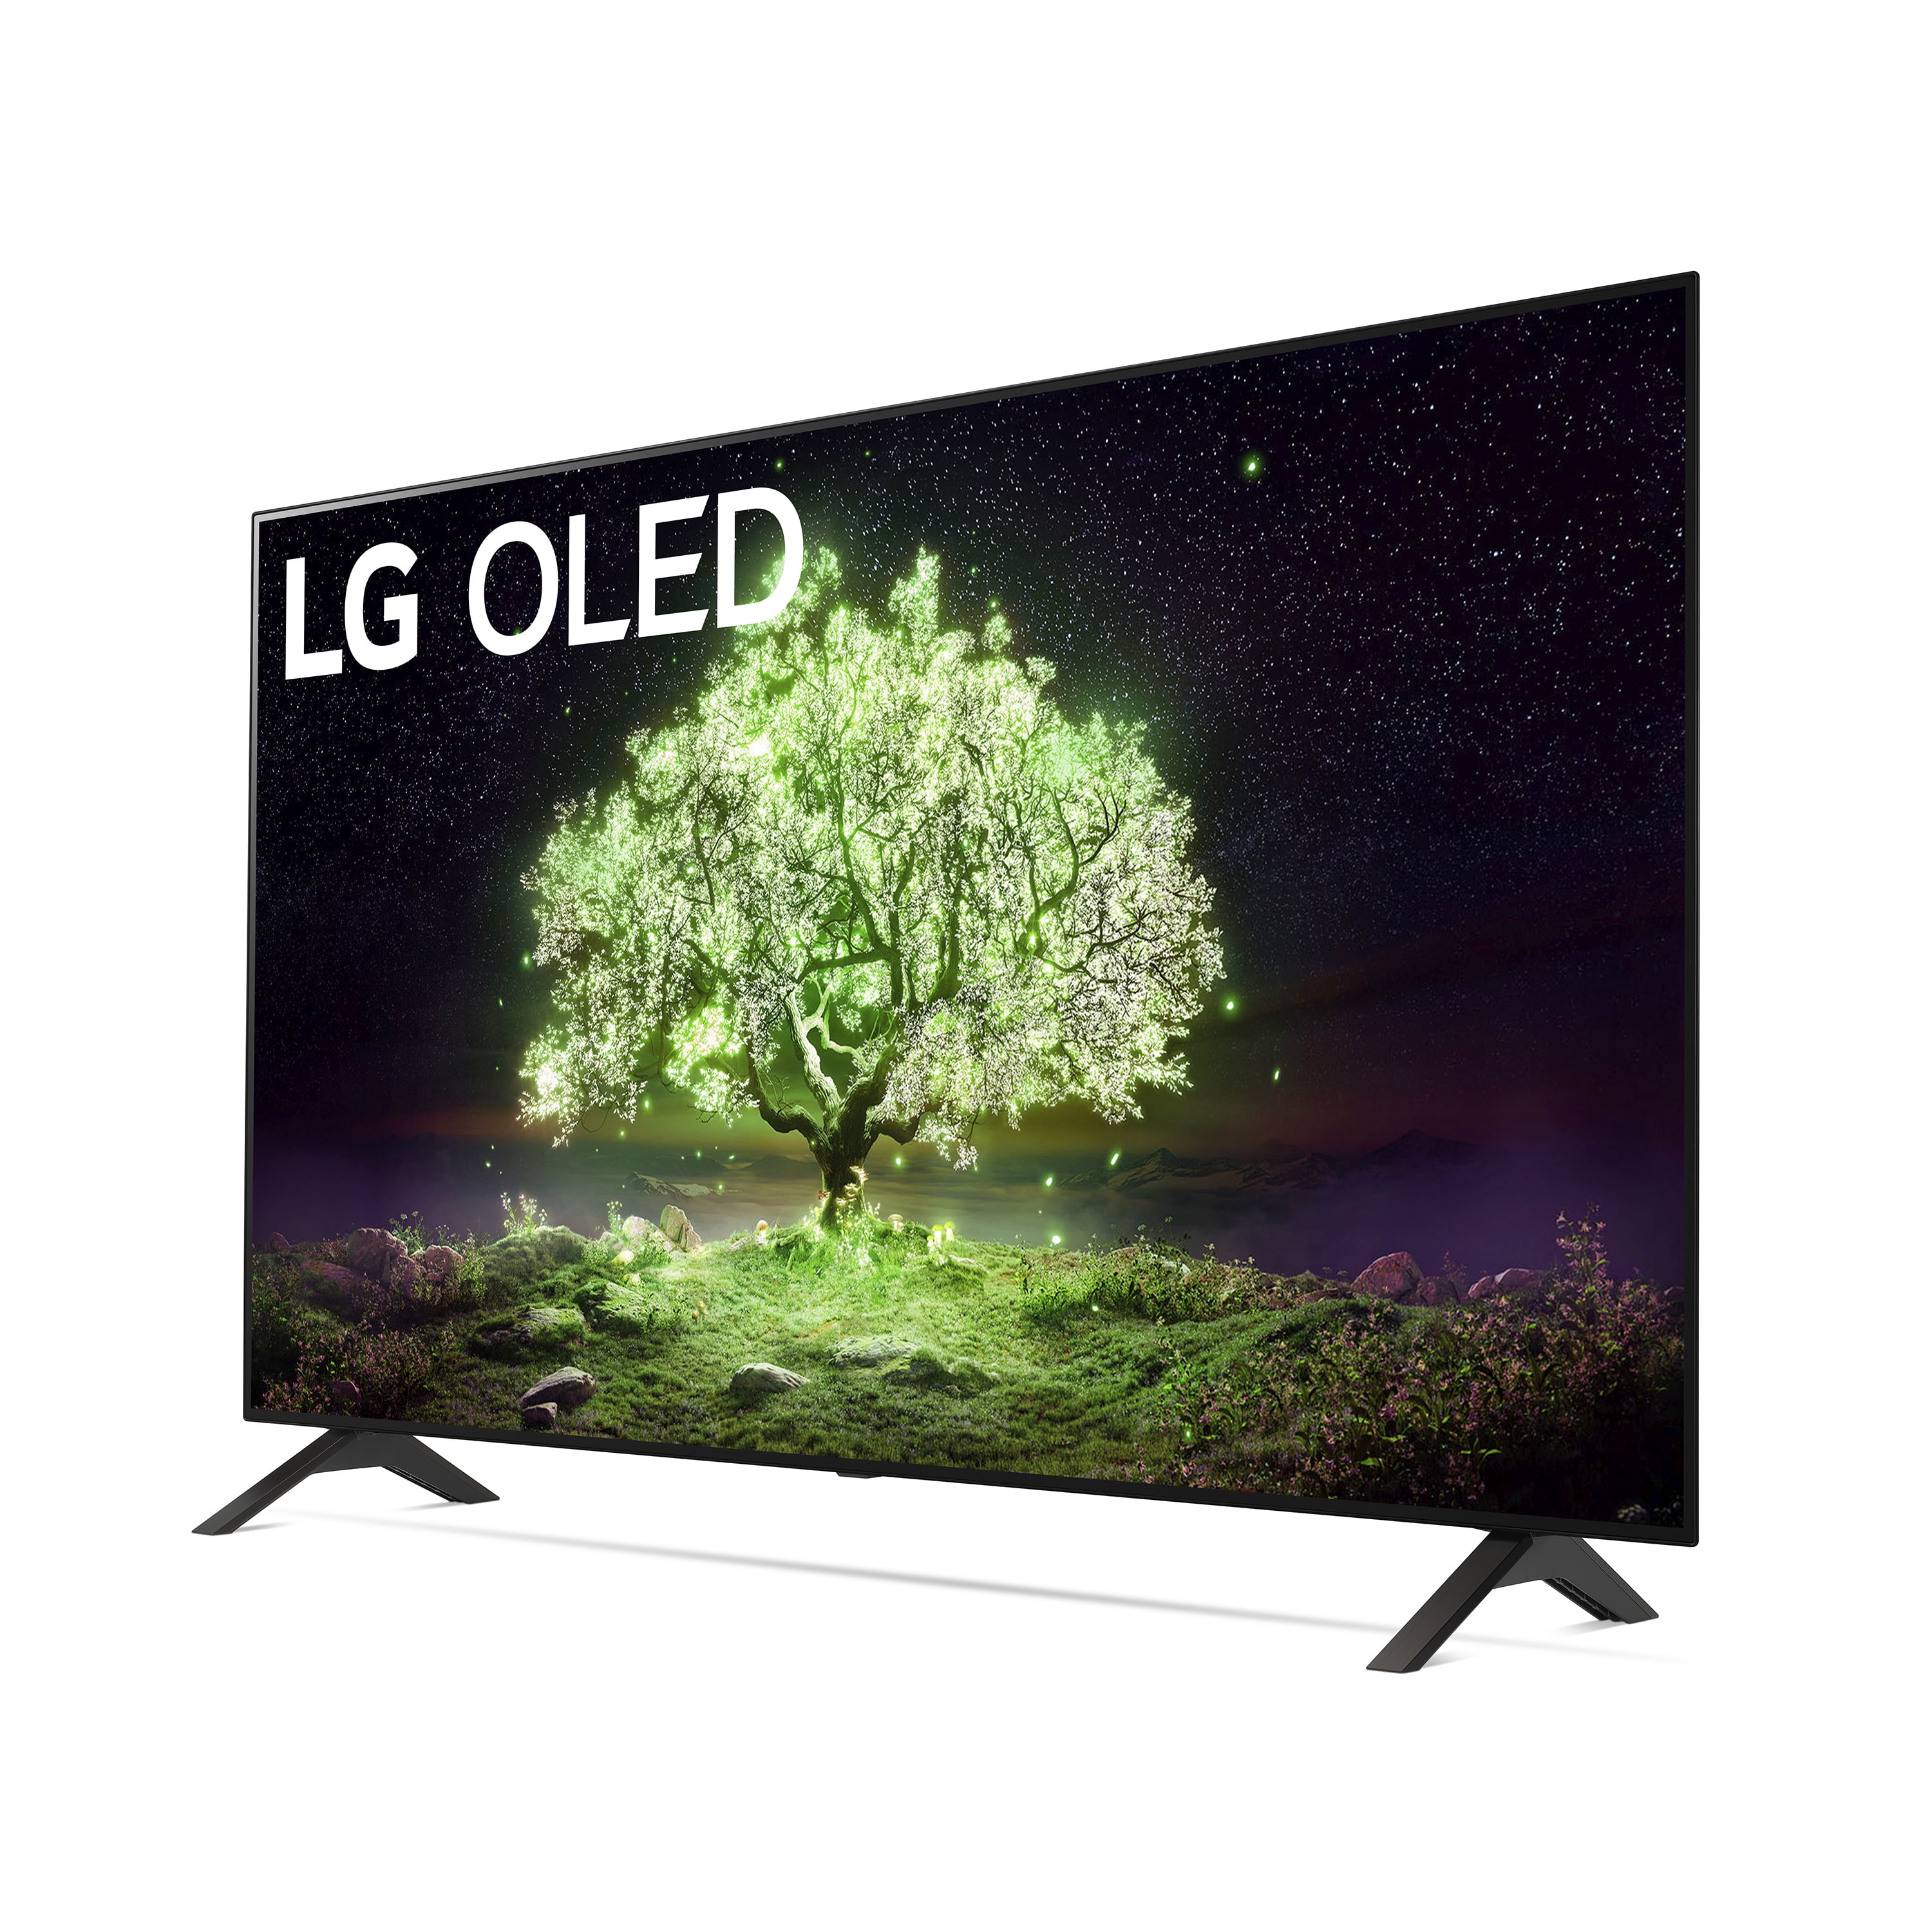 Best Buy Early Black Friday Deals: LG OLED TV, PS5 Slim Bundle, More